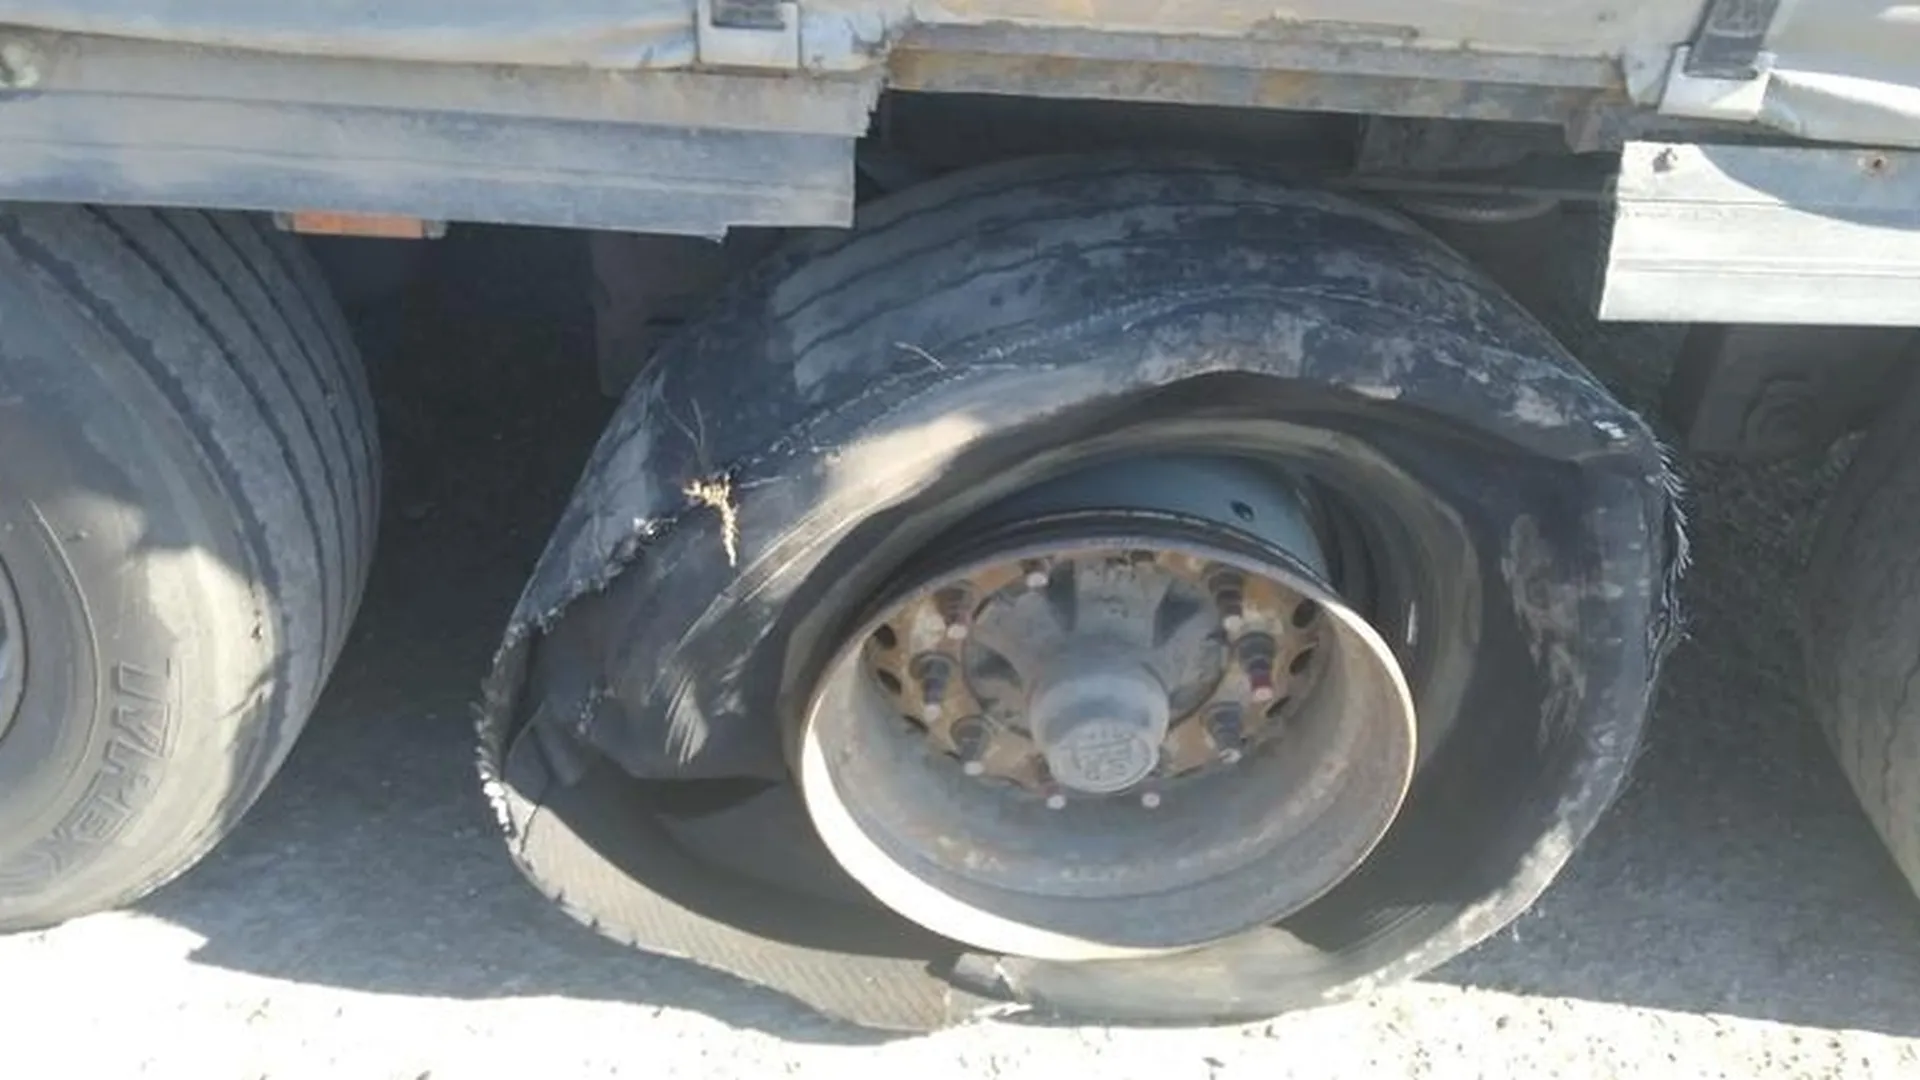 Взорвавшееся колесо фуры сломало дверь ехавшей рядом легковушки в Раменском районе